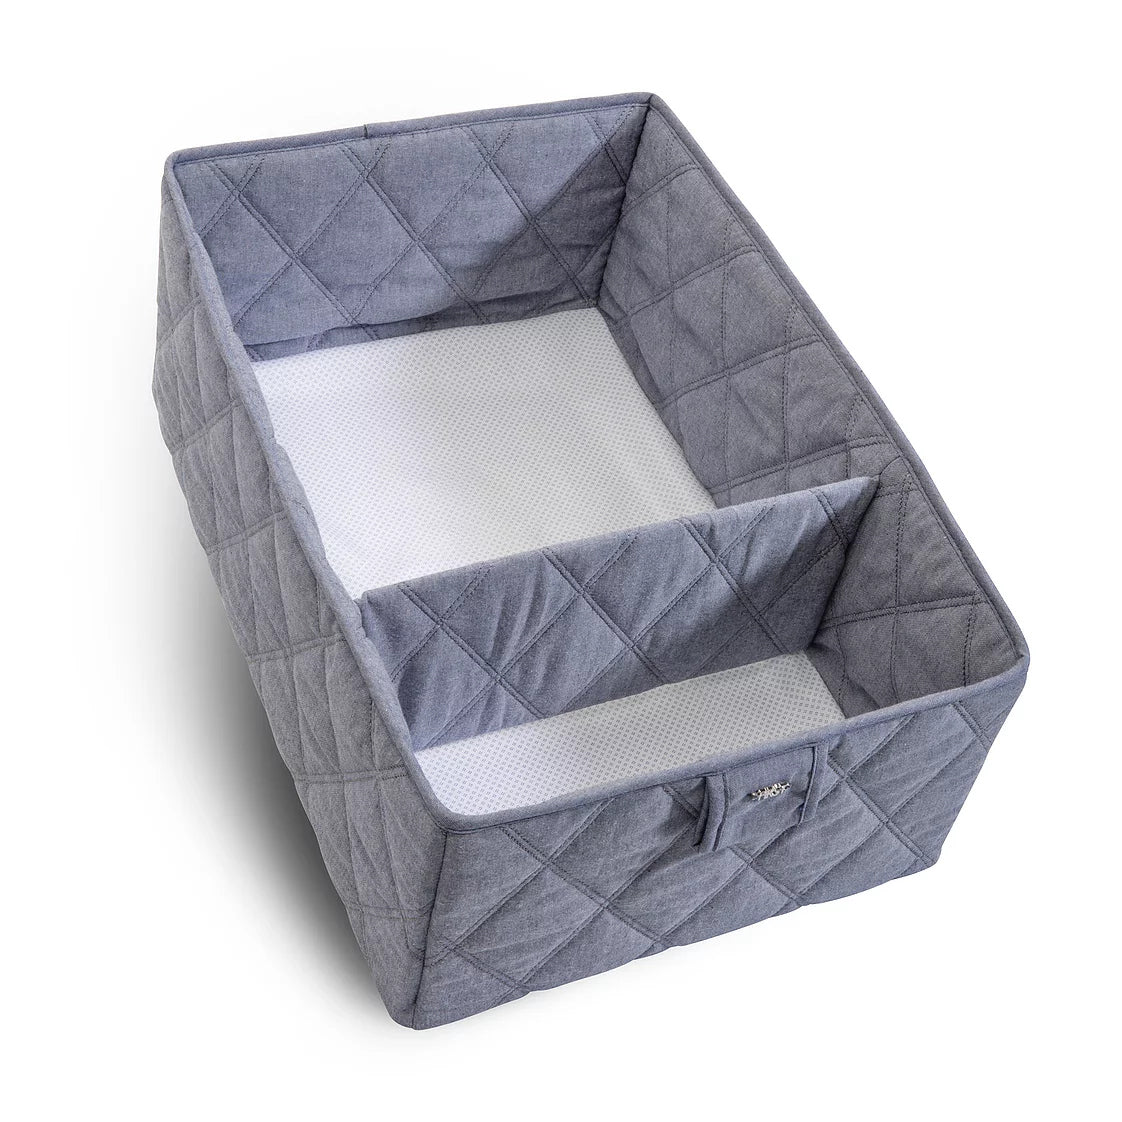 First True Blue Care Basket - Storage Box